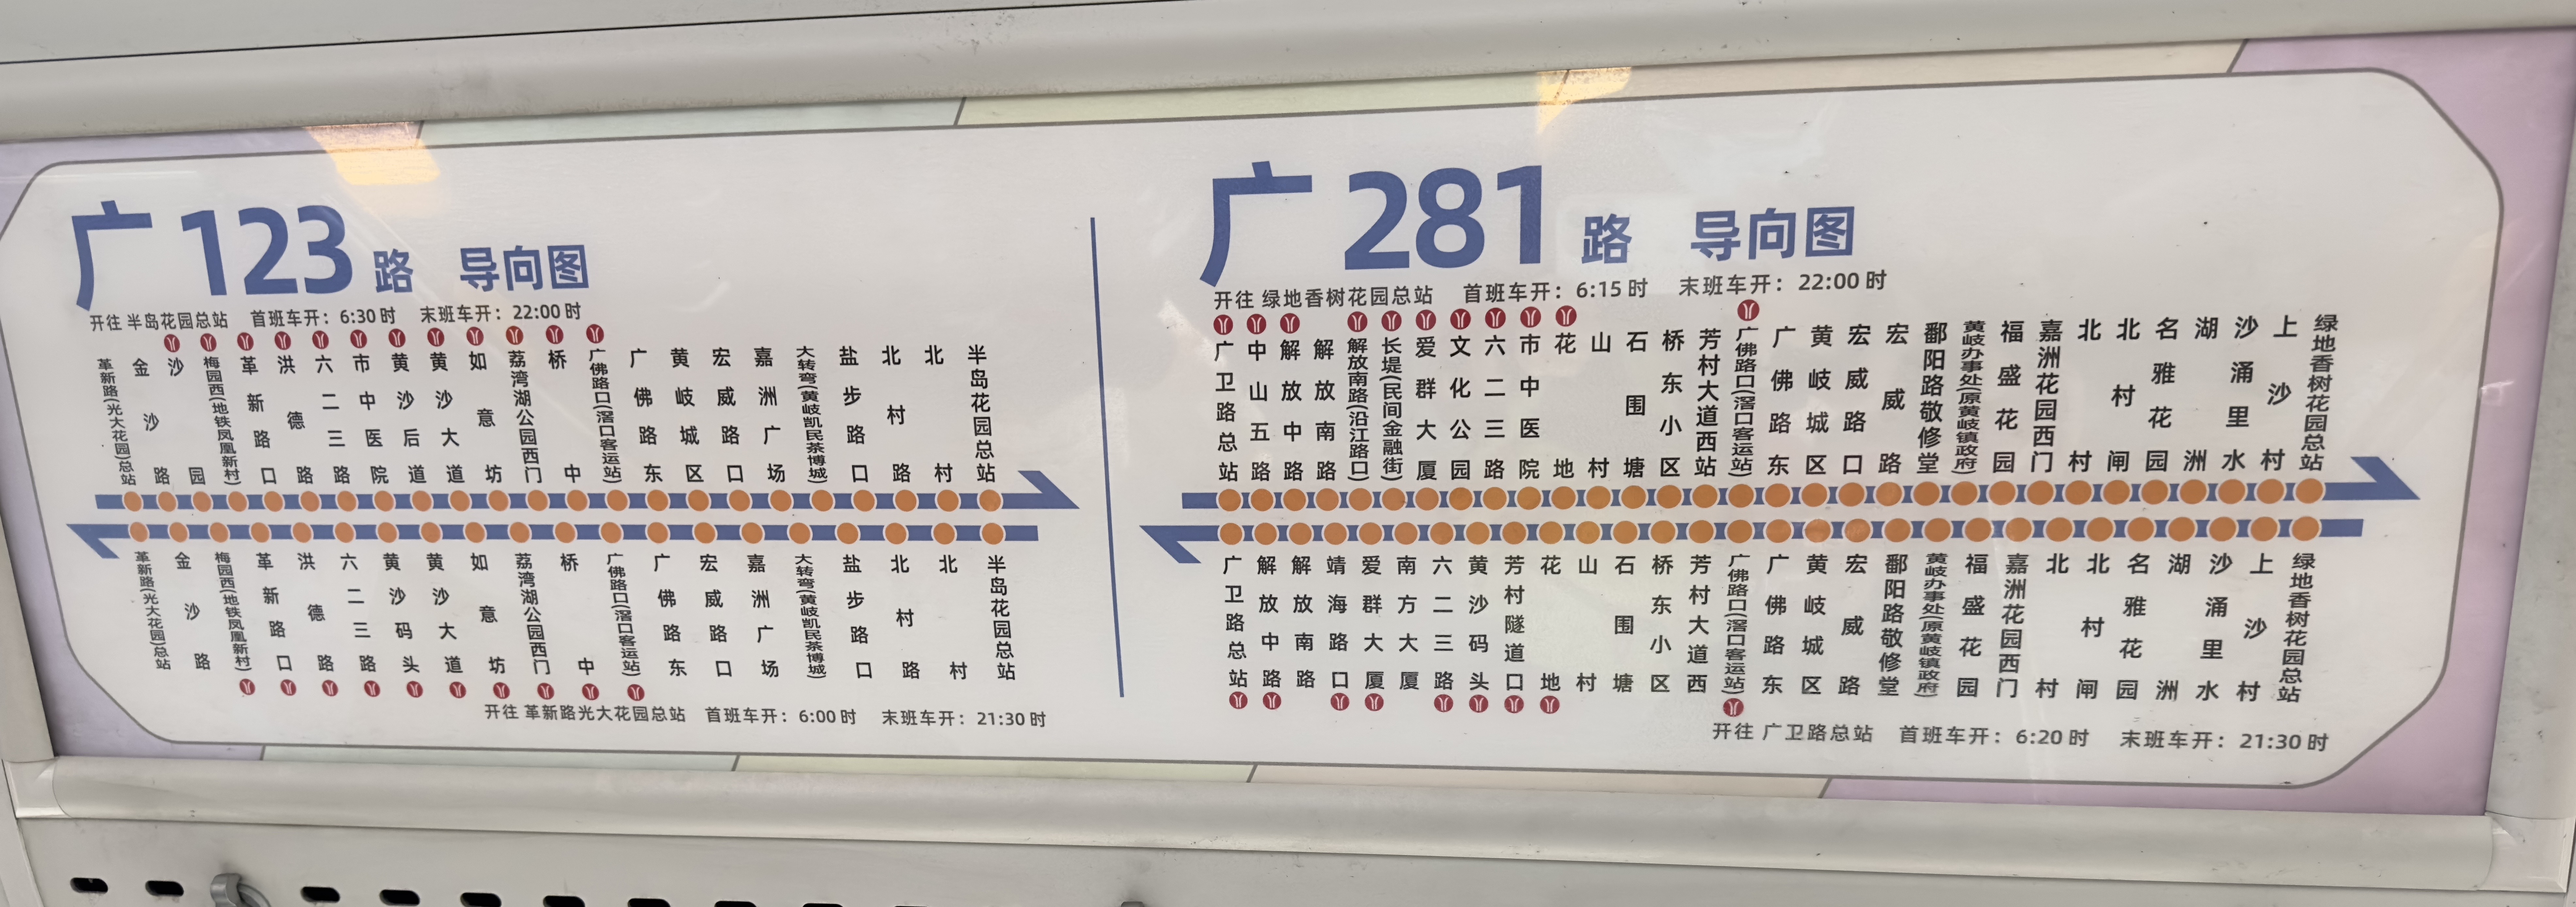 广州123路公交车路线